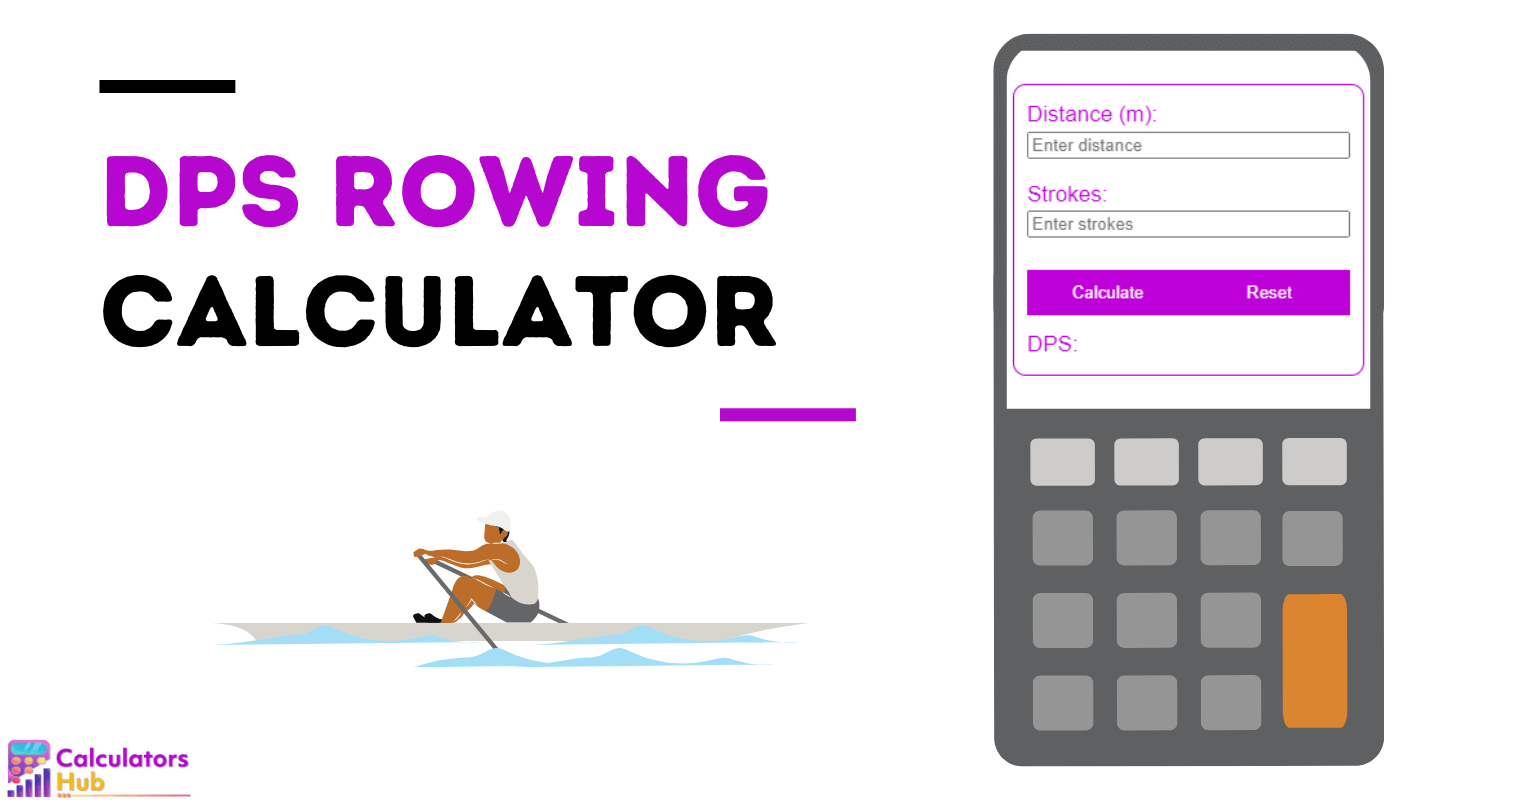 DPS Rowing Calculator